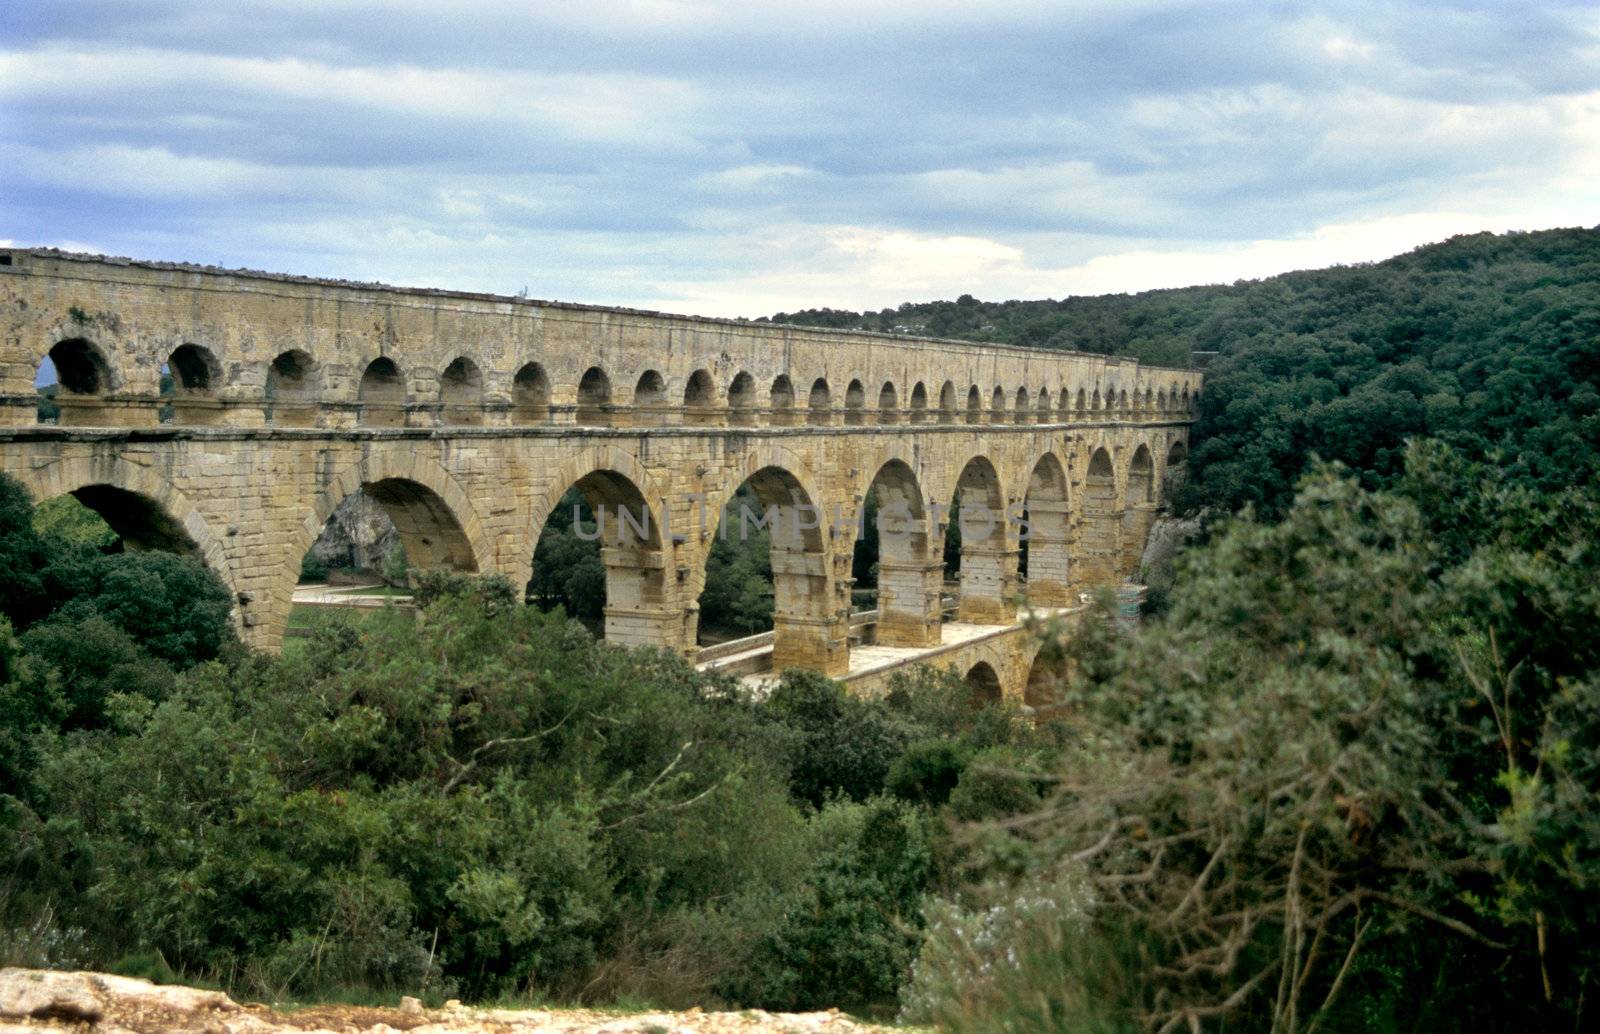 Pont du Gard by ACMPhoto